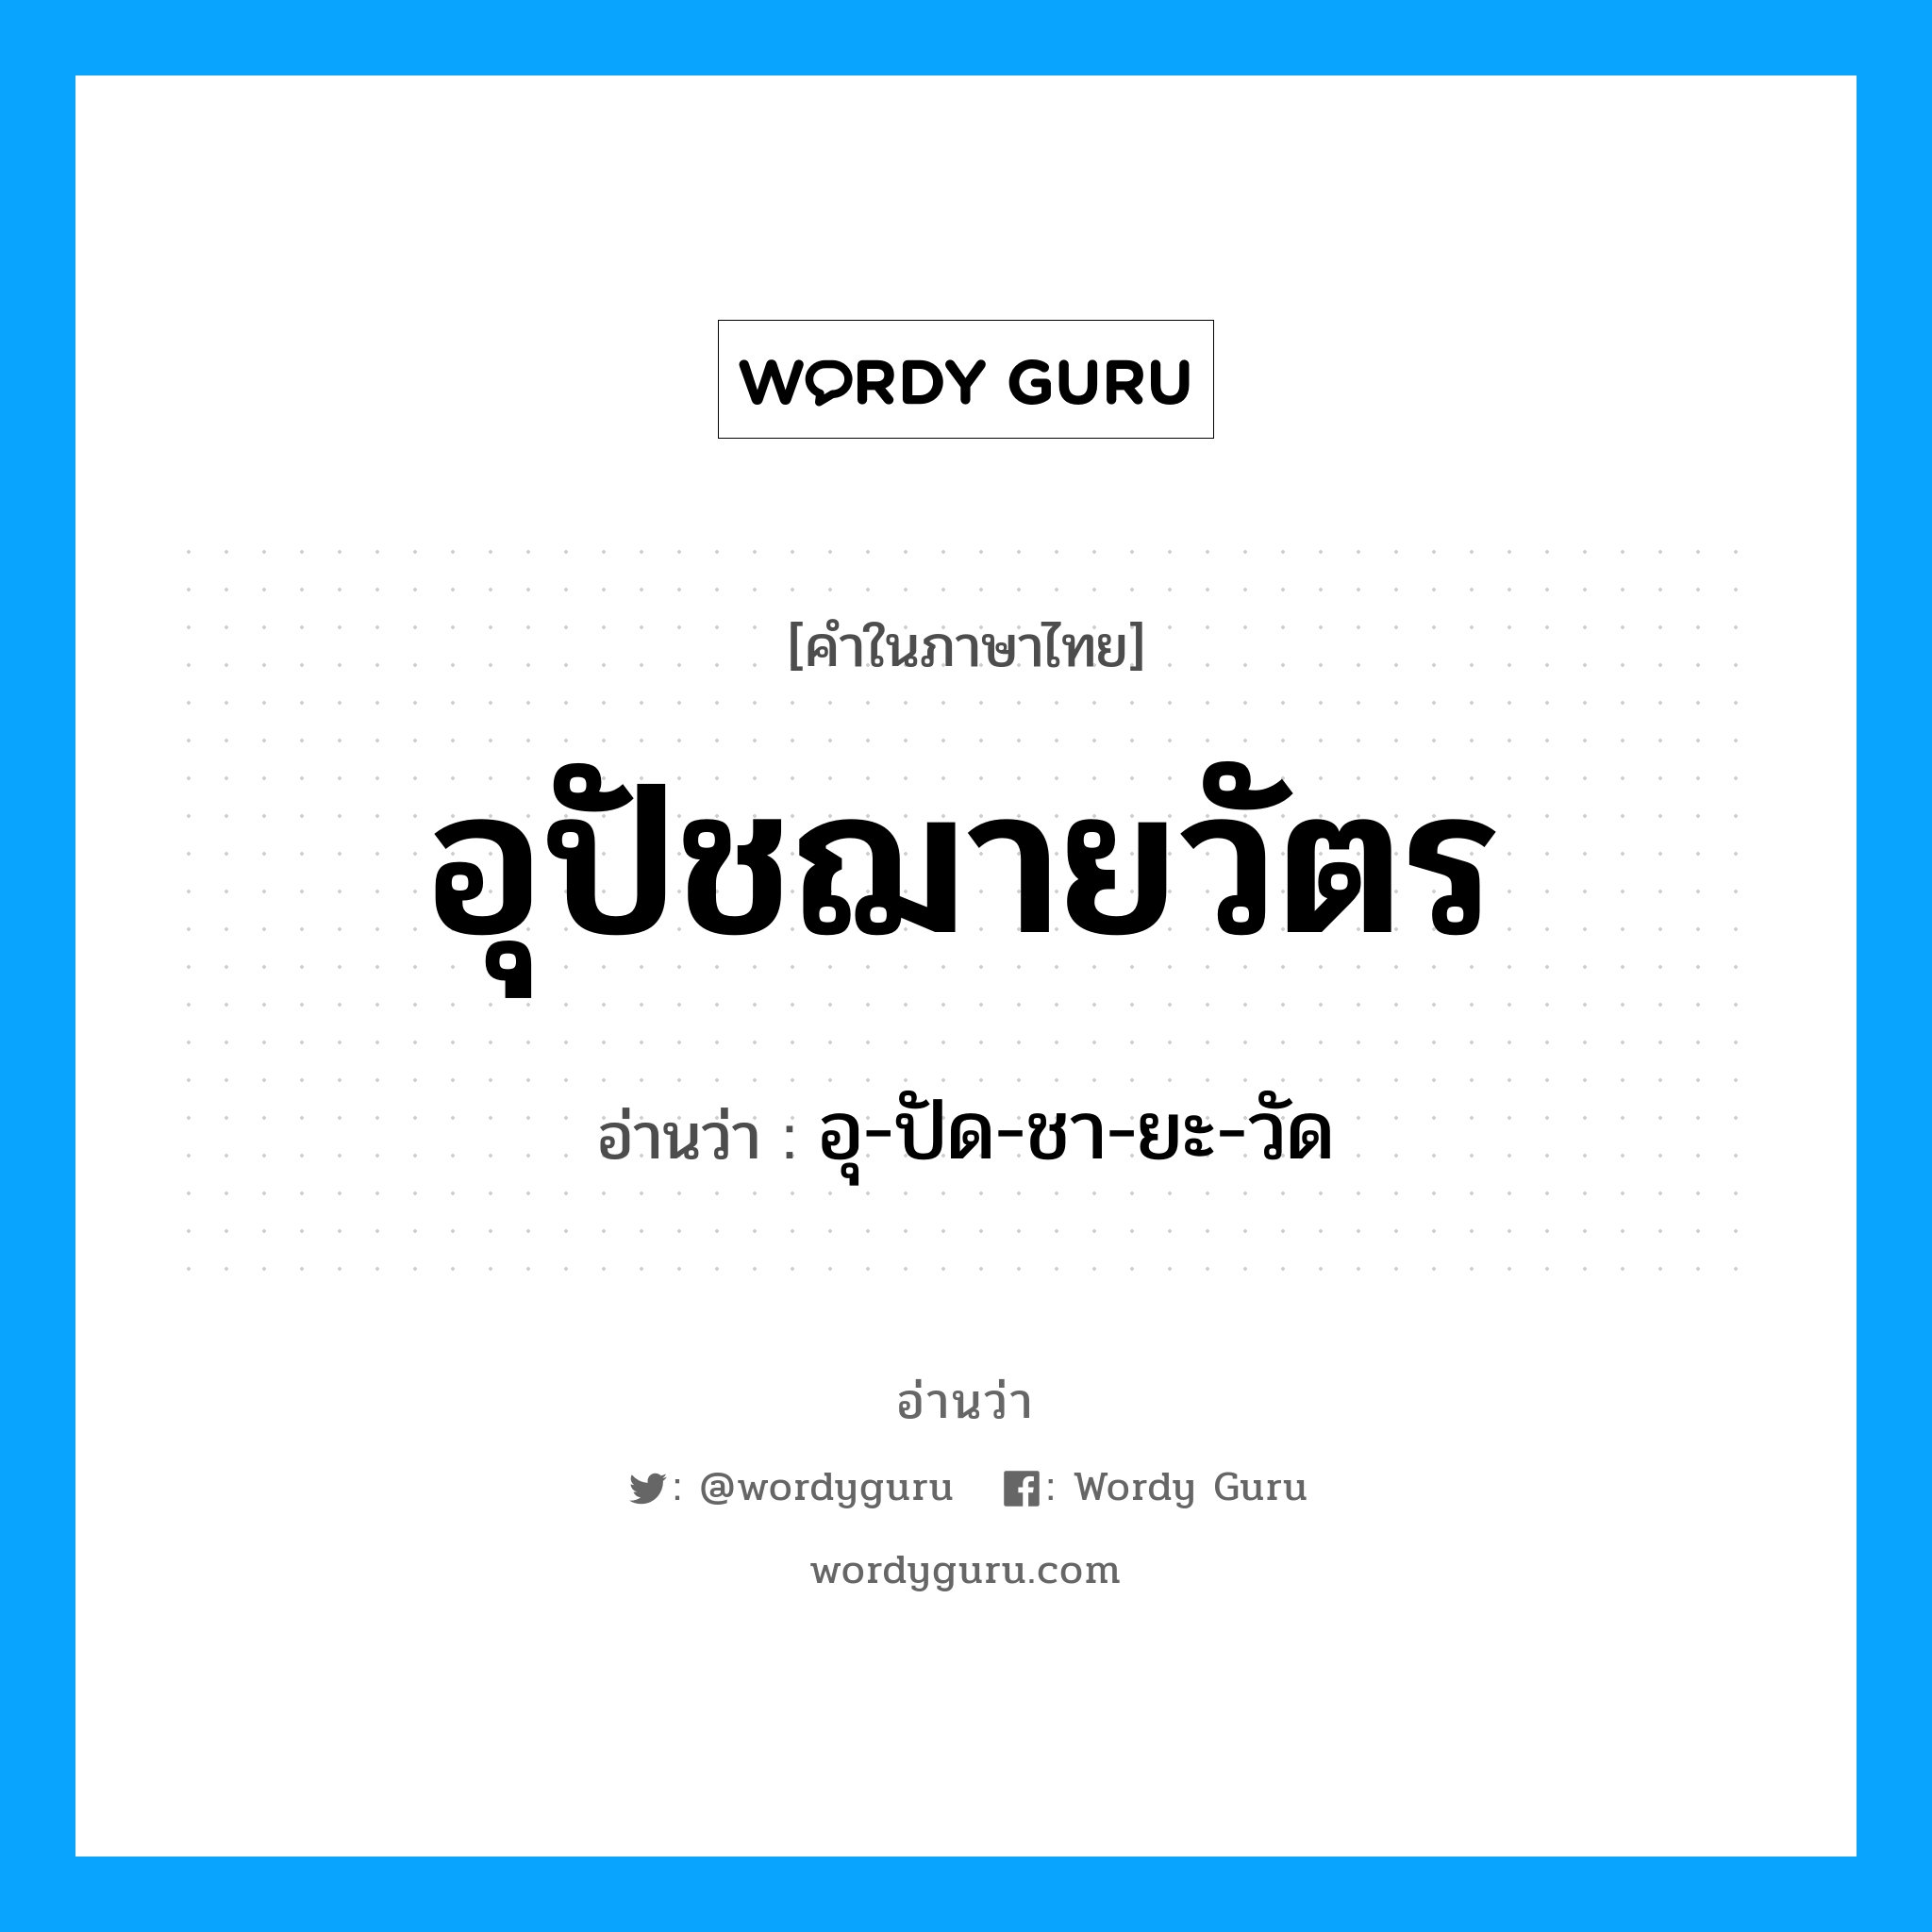 อุ-ปัด-ชา-ยะ-วัด เป็นคำอ่านของคำไหน?, คำในภาษาไทย อุ-ปัด-ชา-ยะ-วัด อ่านว่า อุปัชฌายวัตร